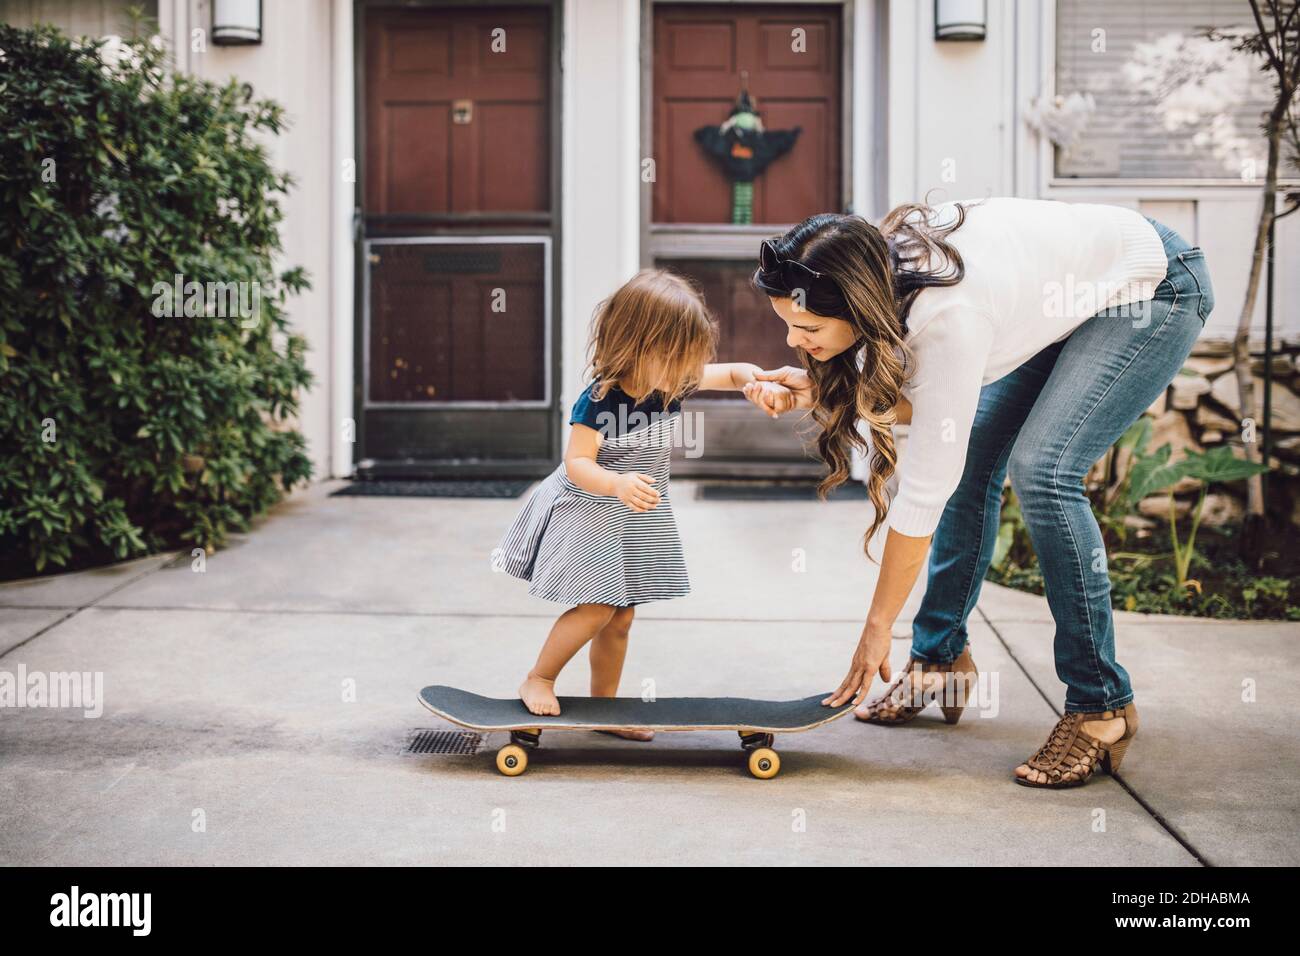 Elle fait du skateboard avec l'aide d'une mère souriante sur une piste de marche Banque D'Images